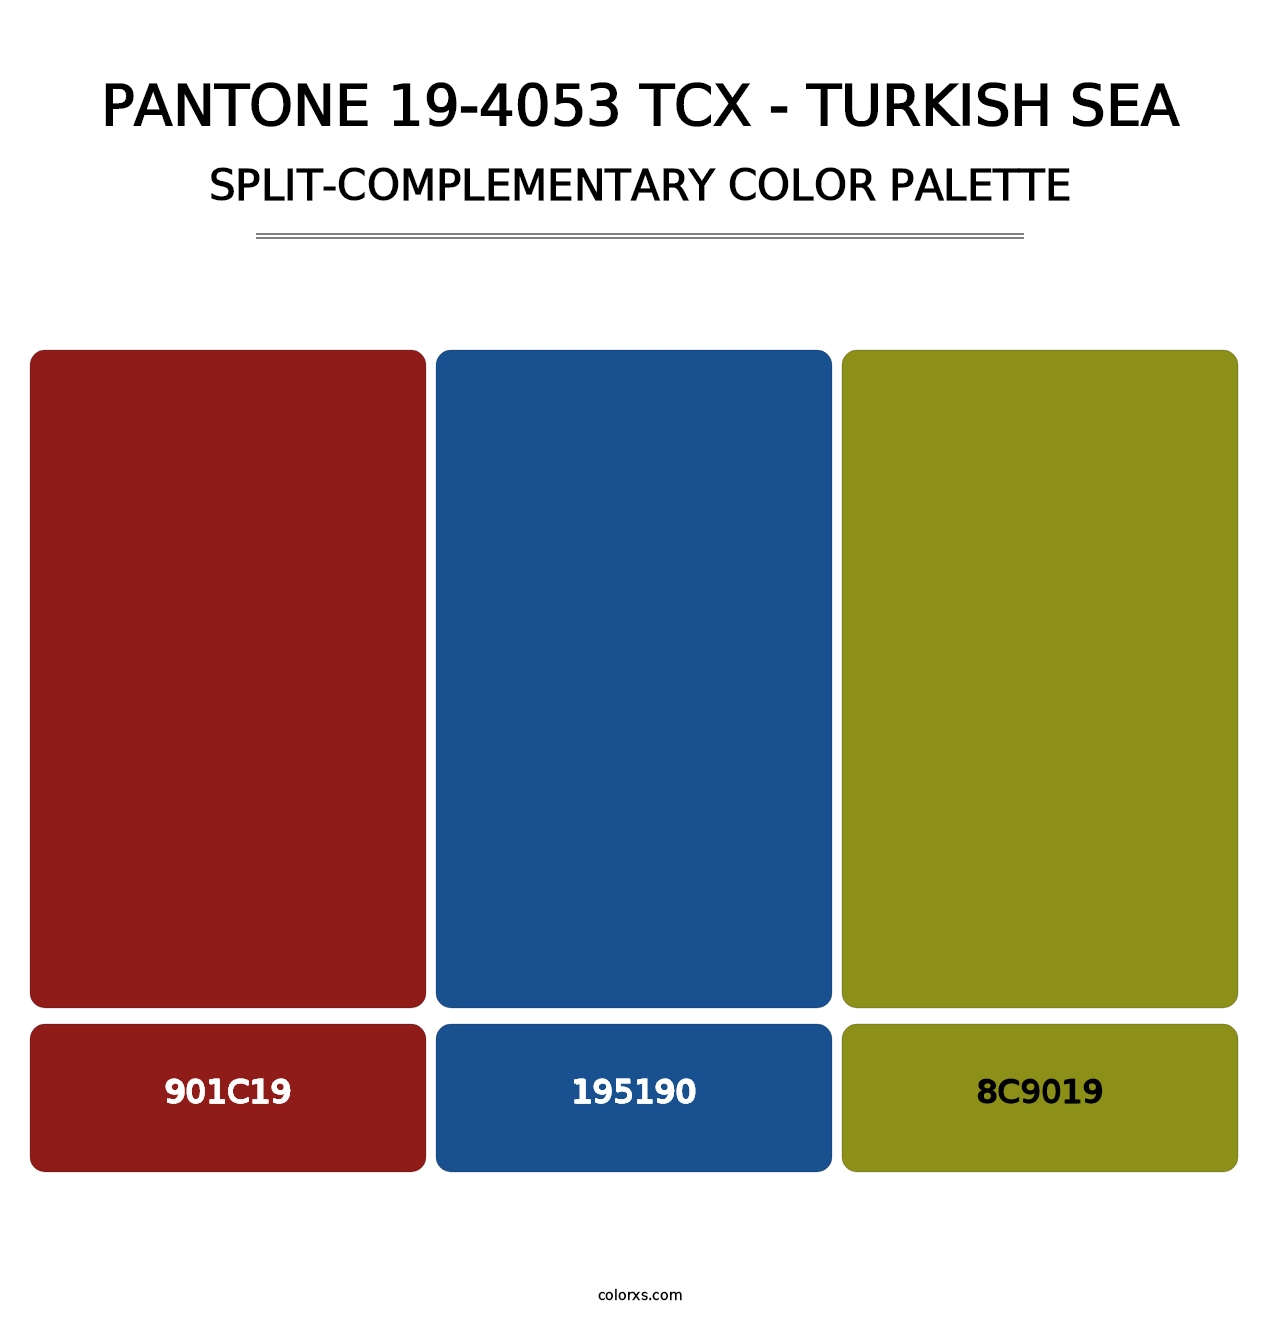 PANTONE 19-4053 TCX - Turkish Sea - Split-Complementary Color Palette